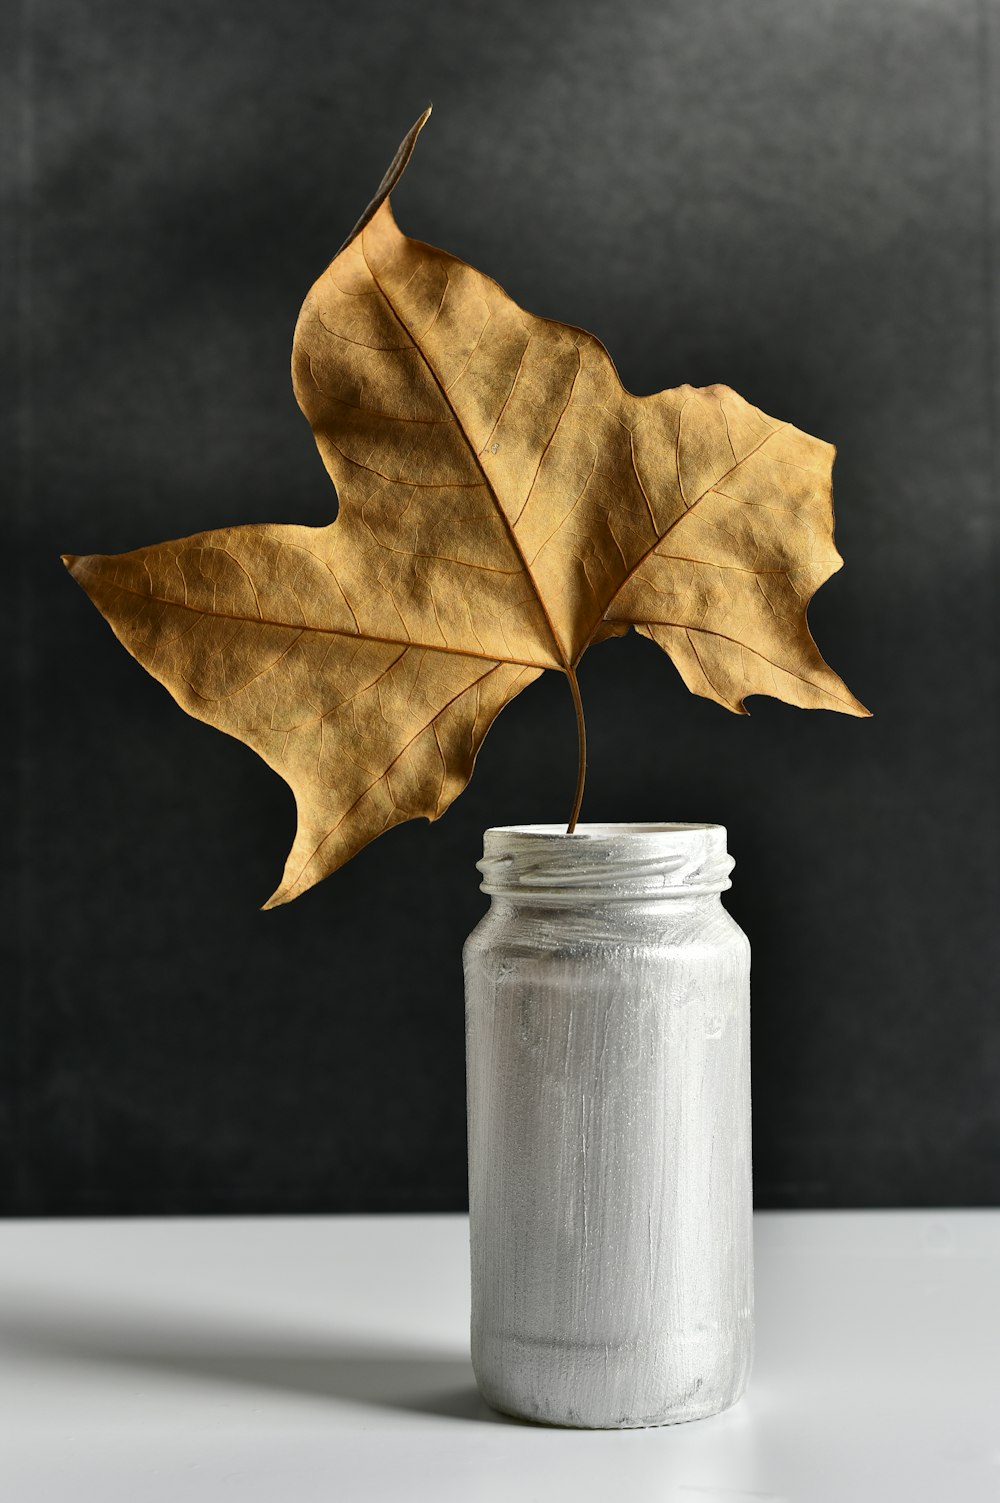 brown maple leaf on clear glass jar